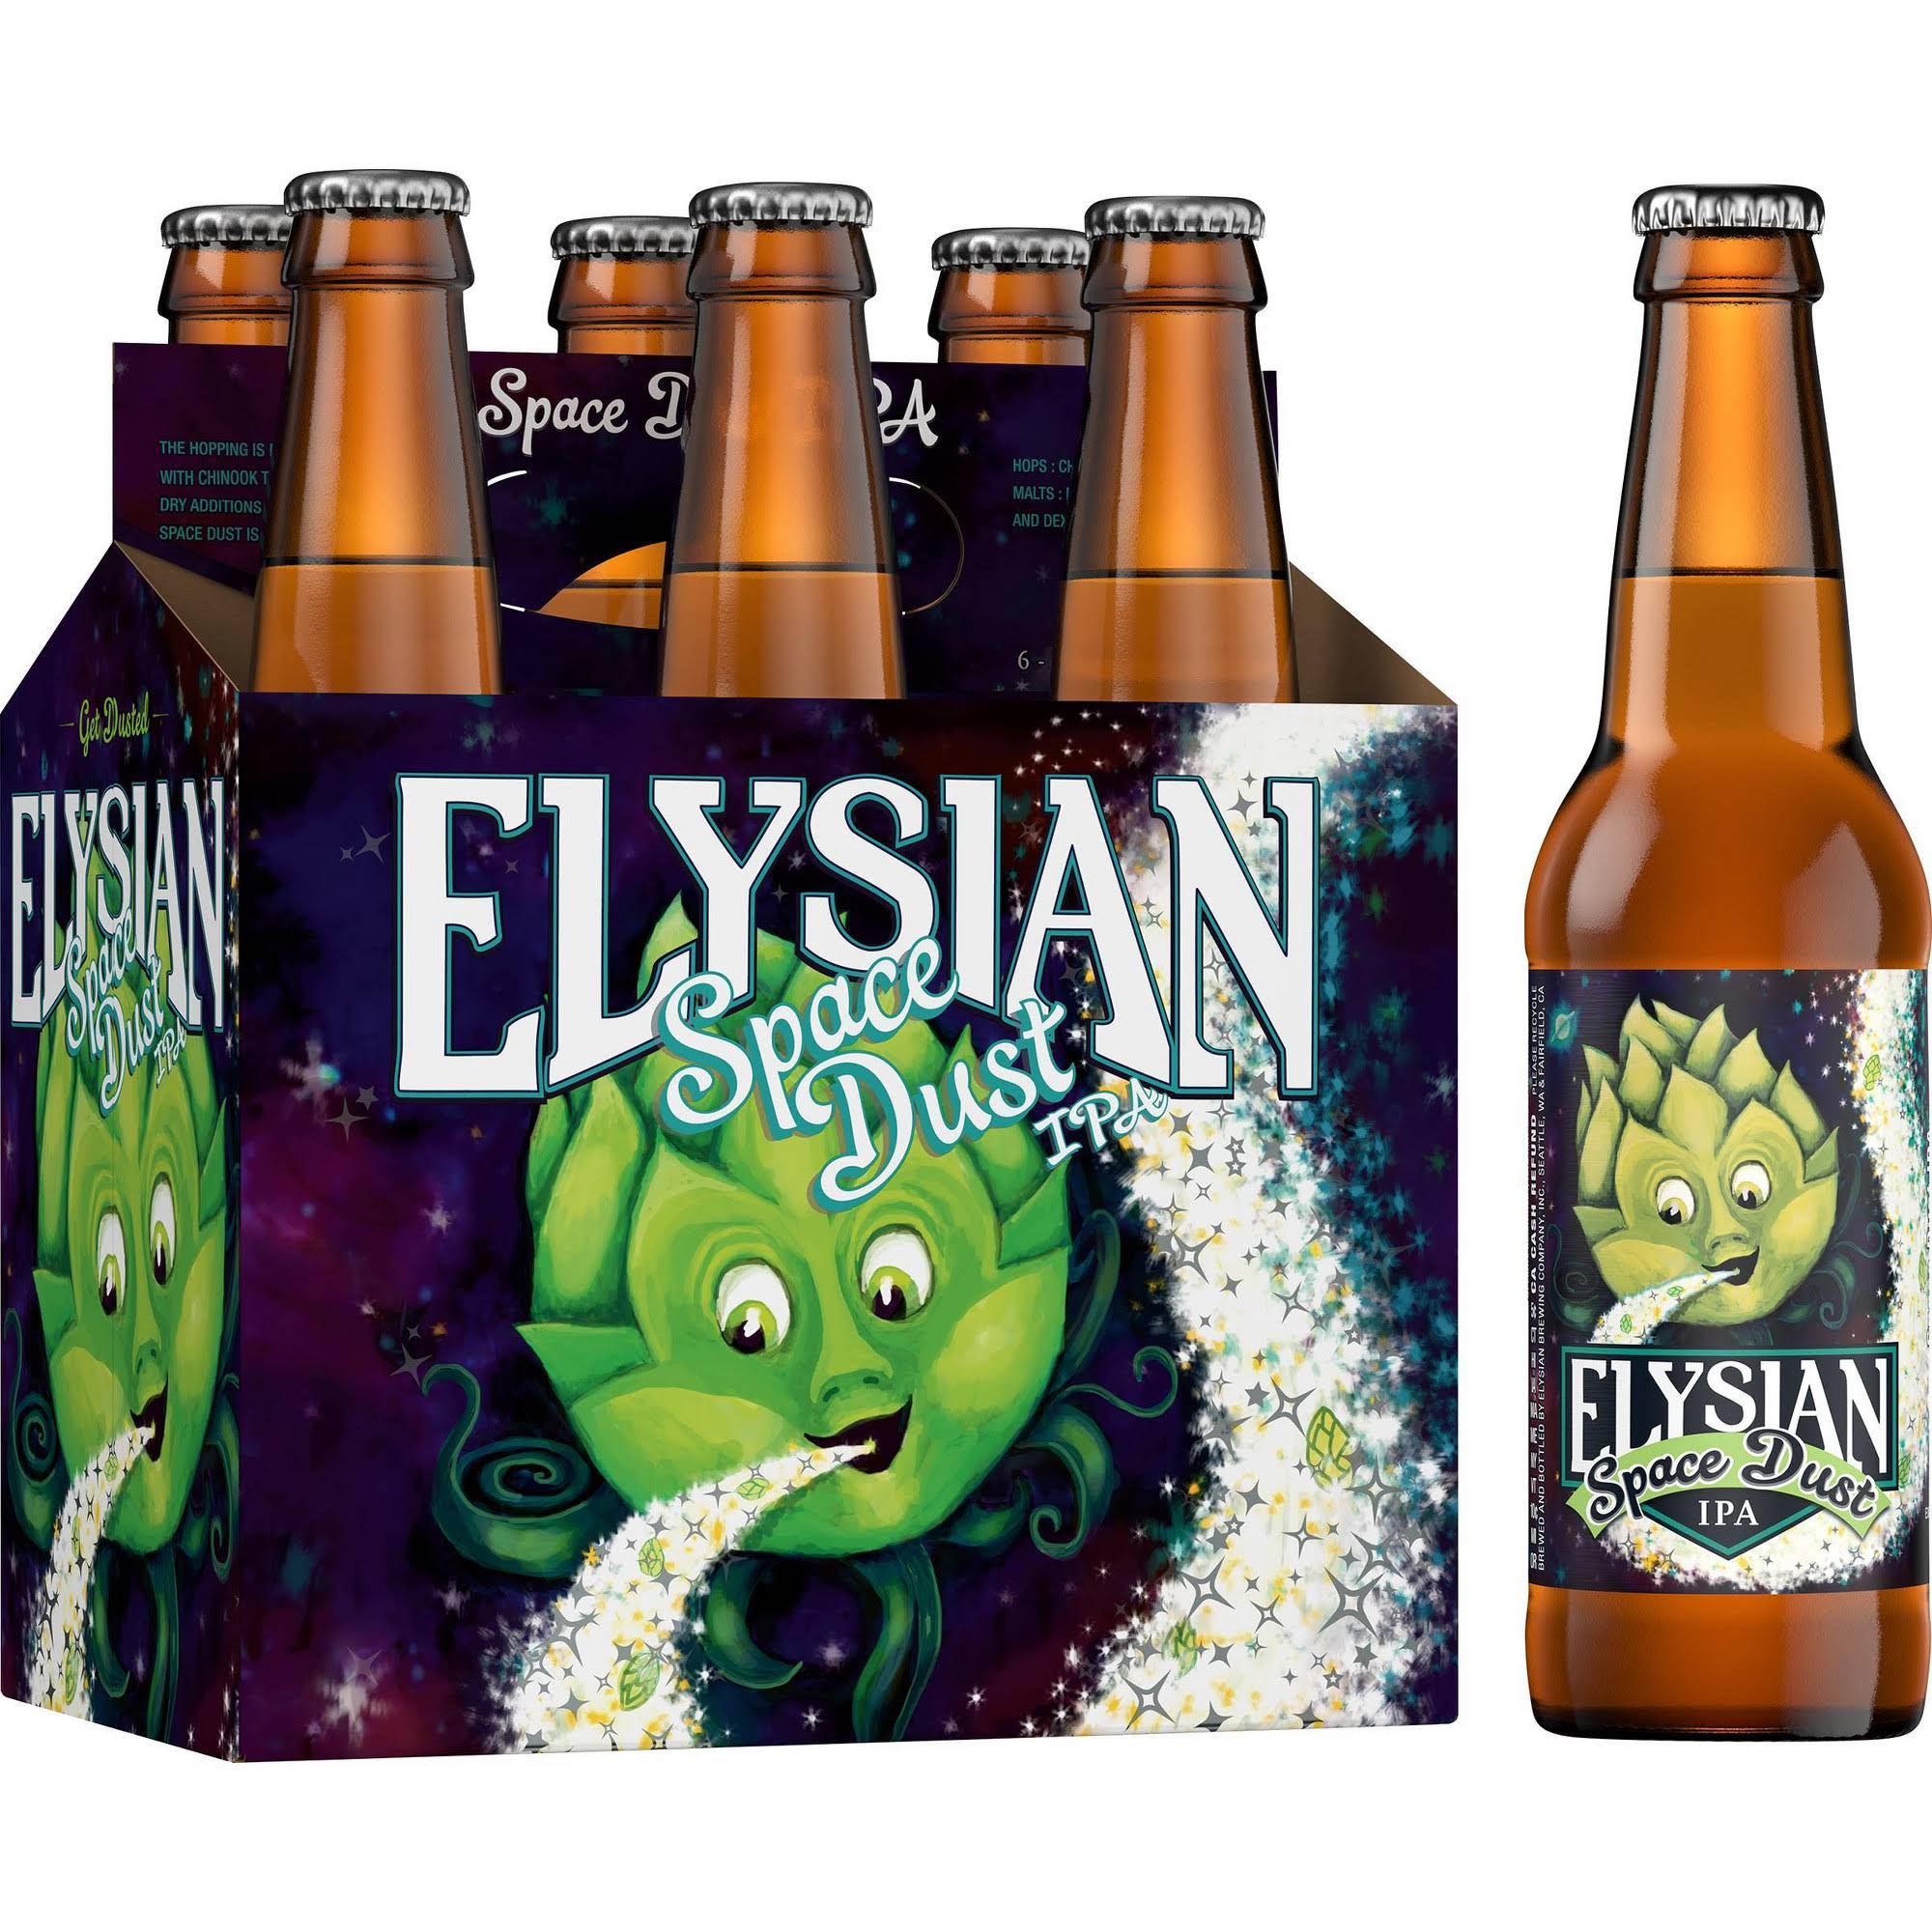 Elysian Beer, IPA, Space Dust - 6 bottles